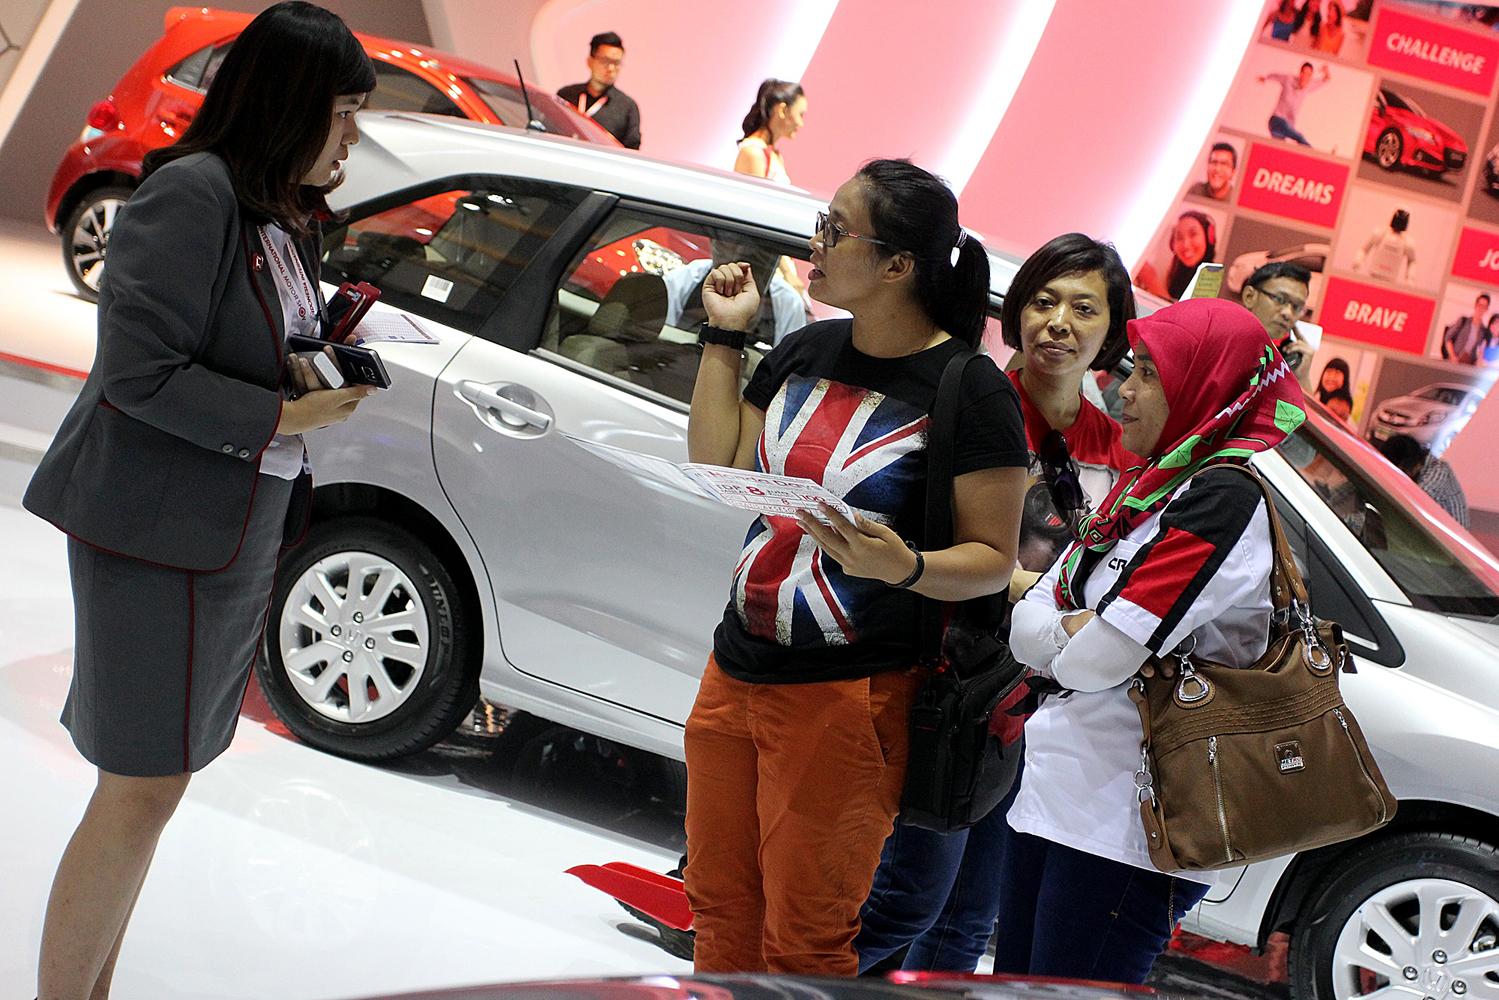 Pengunjung bertanya mengenai salah satu produk mobil pada arena pameran otomotif Indonesia International Motor Show (IIMS) 2016 saat pembukaan di Jakarta, Kamis (7/4). Pemeran otomotif yang akan berlangsung hingga 17 April 2016 itu diikuti pelaku industri otomotif di tanah air dengan menampilkan produk unggulan.